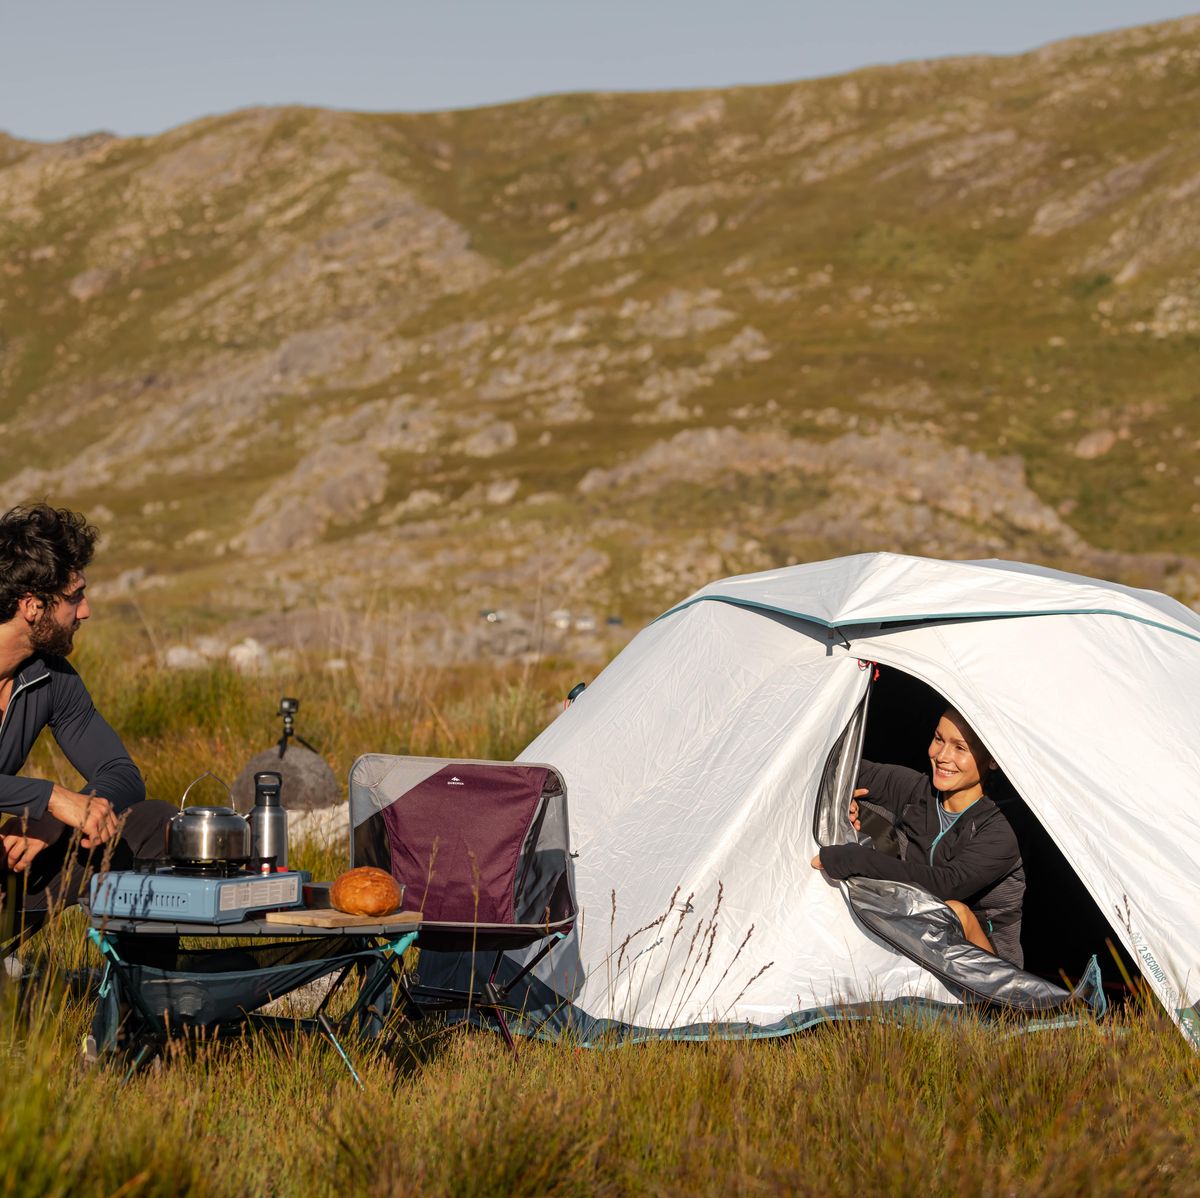 Soplar En el nombre Acercarse Decathlon tiene la mejor tienda de campaña para irte de camping